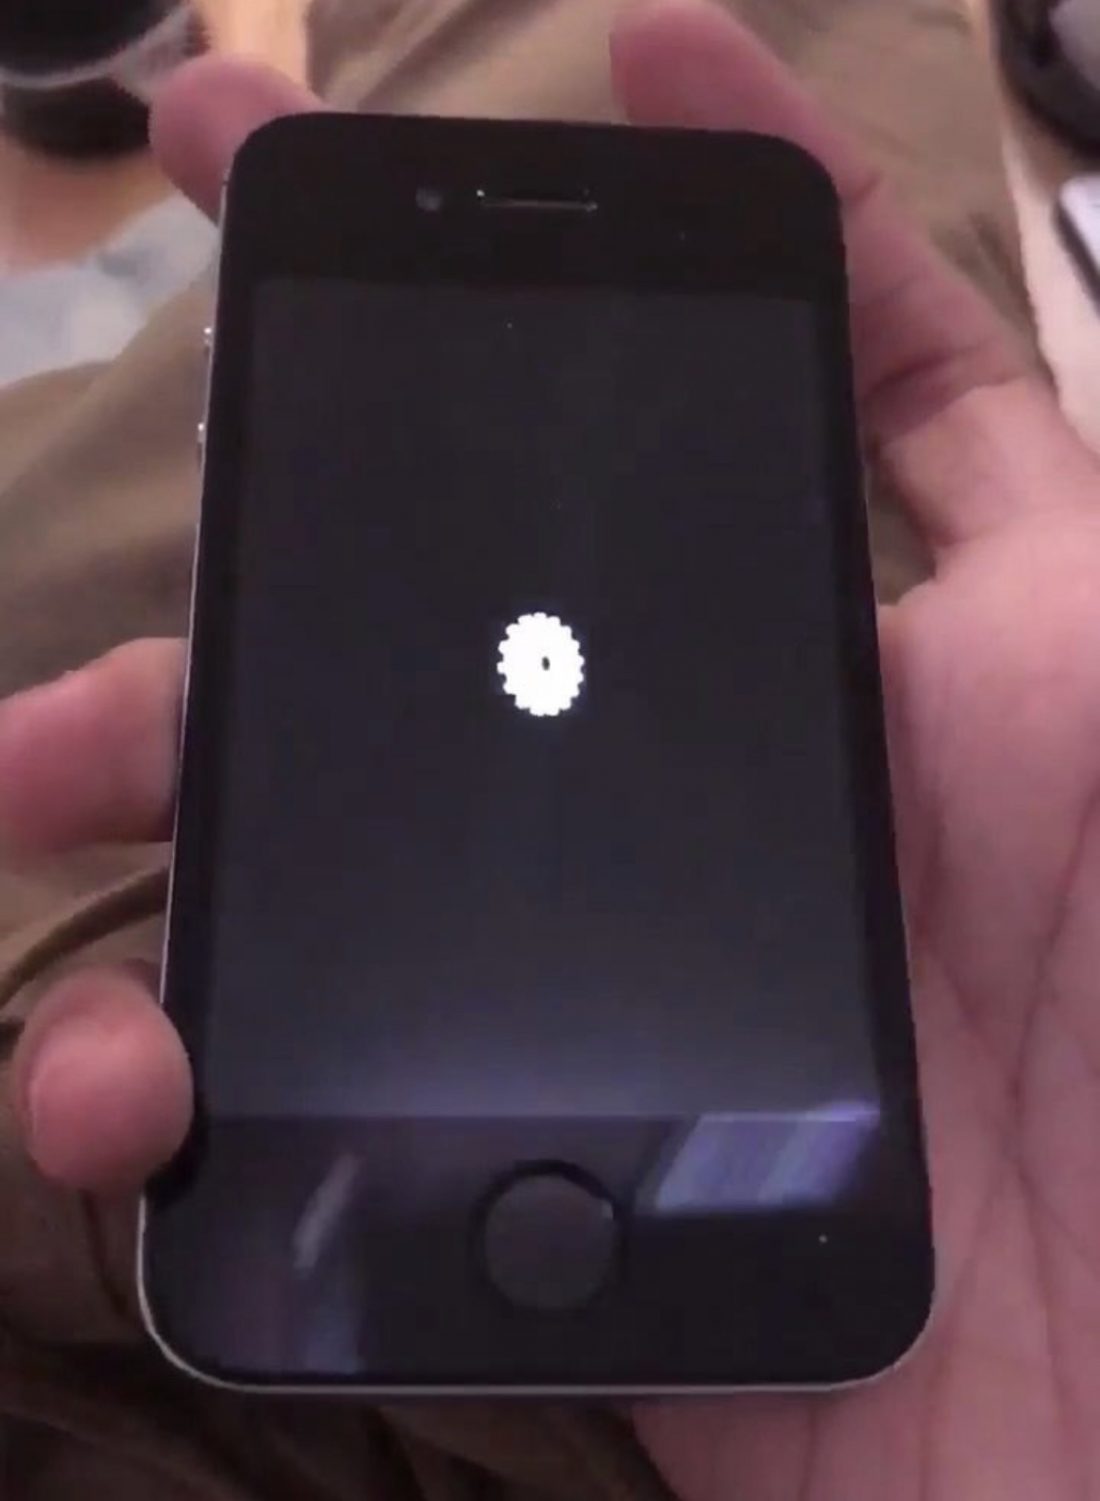 Найден уникальный прототип iPhone 4s с Touch ID. Датчик появился в айфоне только через 2 года